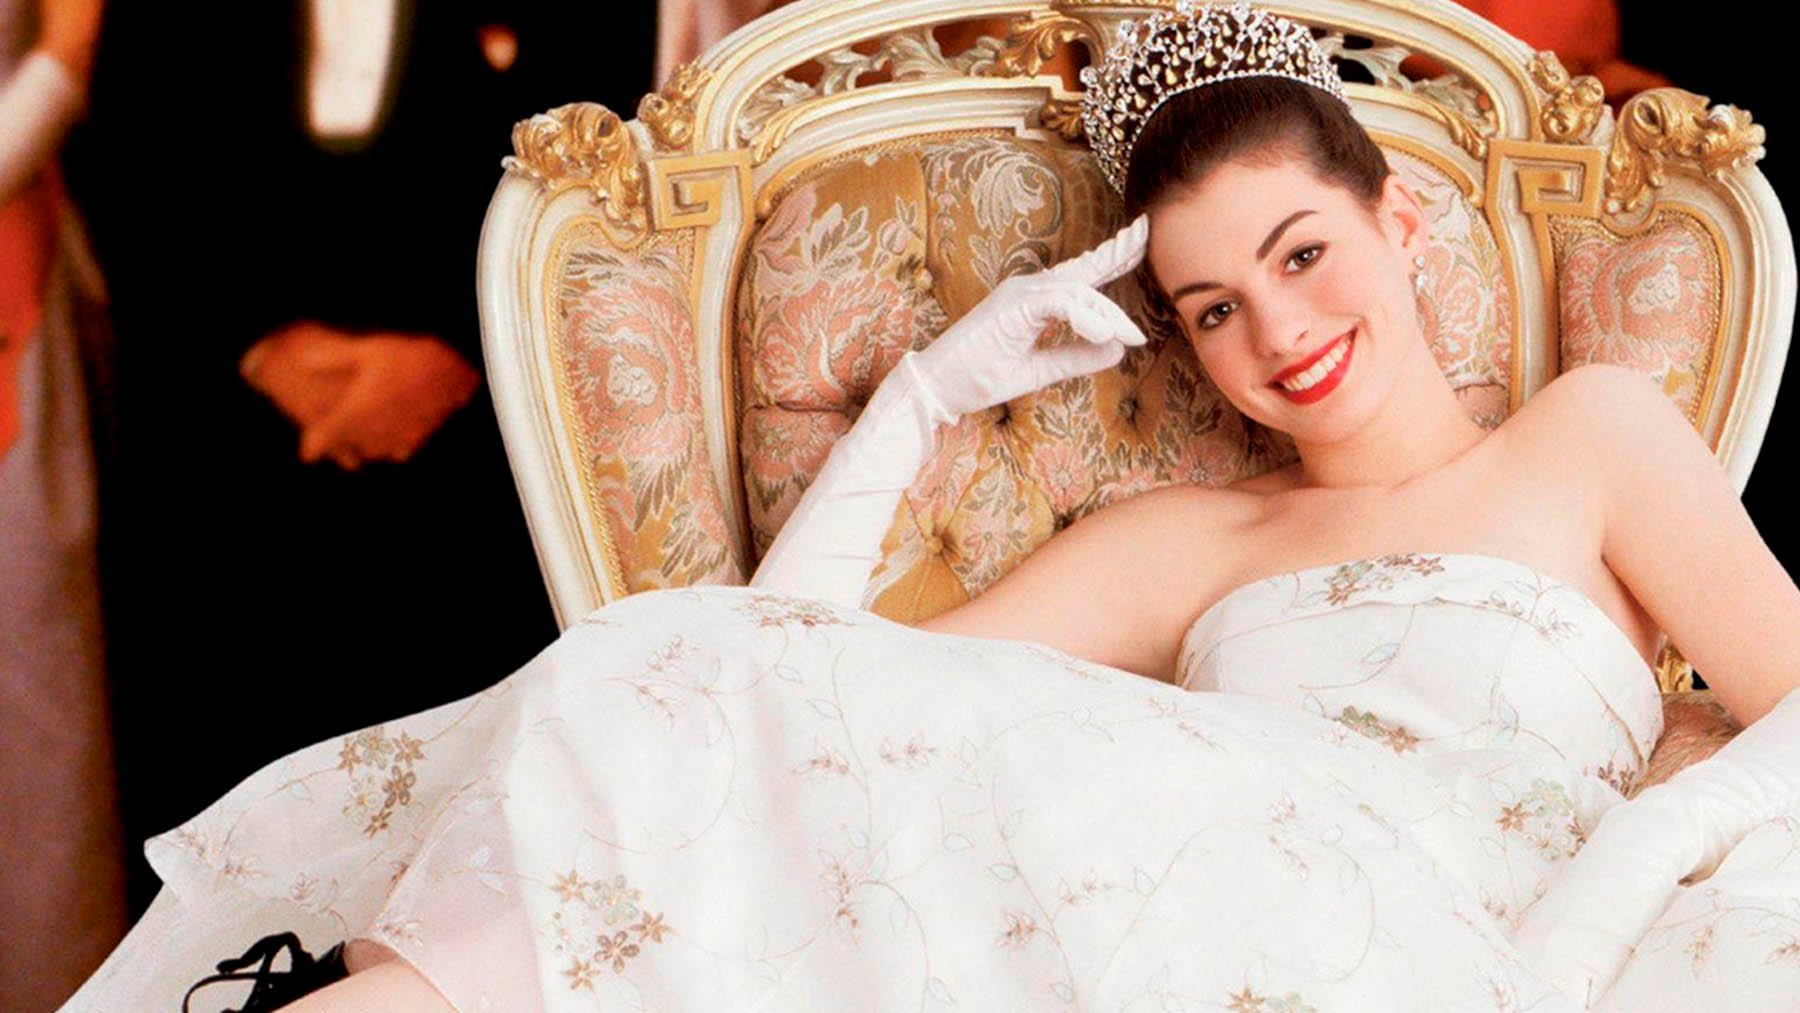 ‘Princesa por sorpresa 3’ comienza su desarrollo: ¿Regresará Anne Hathaway a su icónico papel?